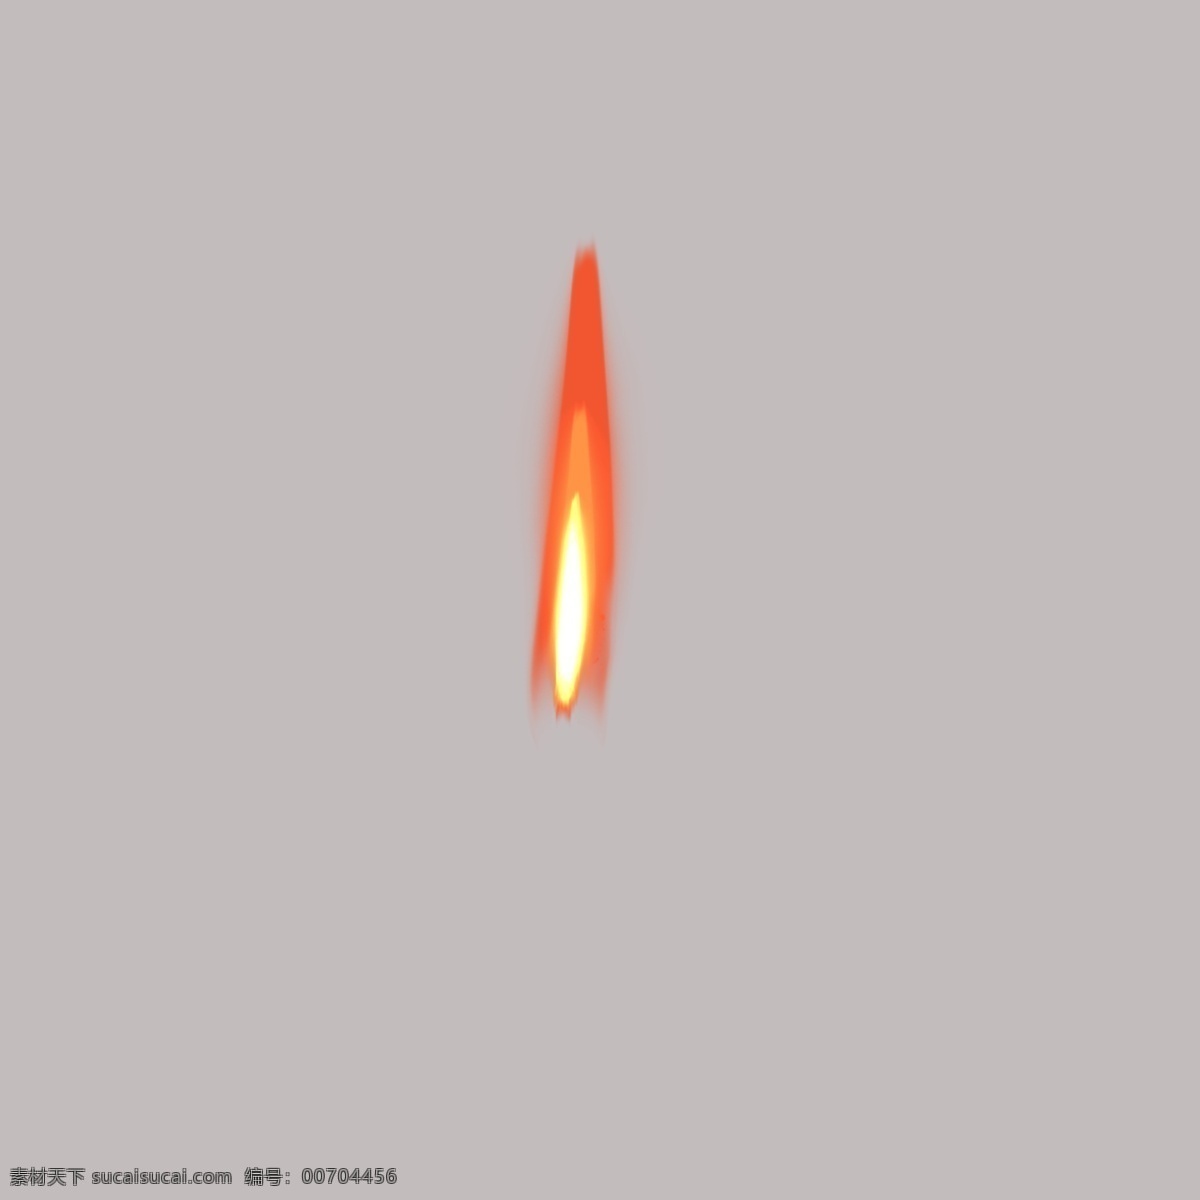 仿真 实 火焰 自然 元素 烛光 火 火星 仿真实火焰 推荐 深色 背景 下 透明 装饰 ps 特效图 火堆 火花 字